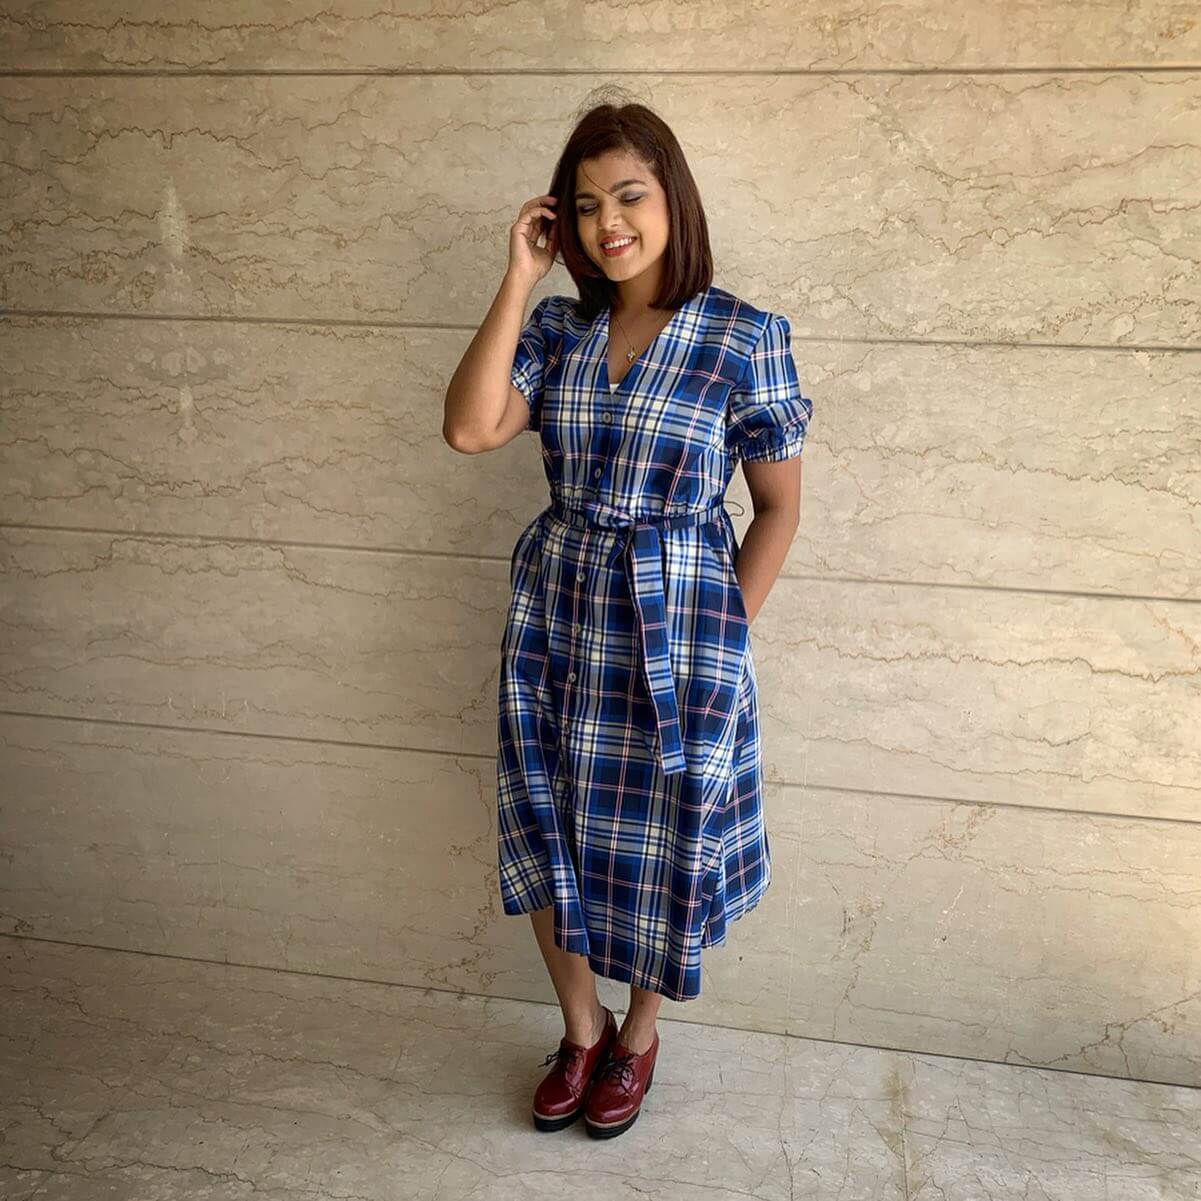 Pooja Devariya Simple & Casual Look In Blue Check Dress With Brown Shoes